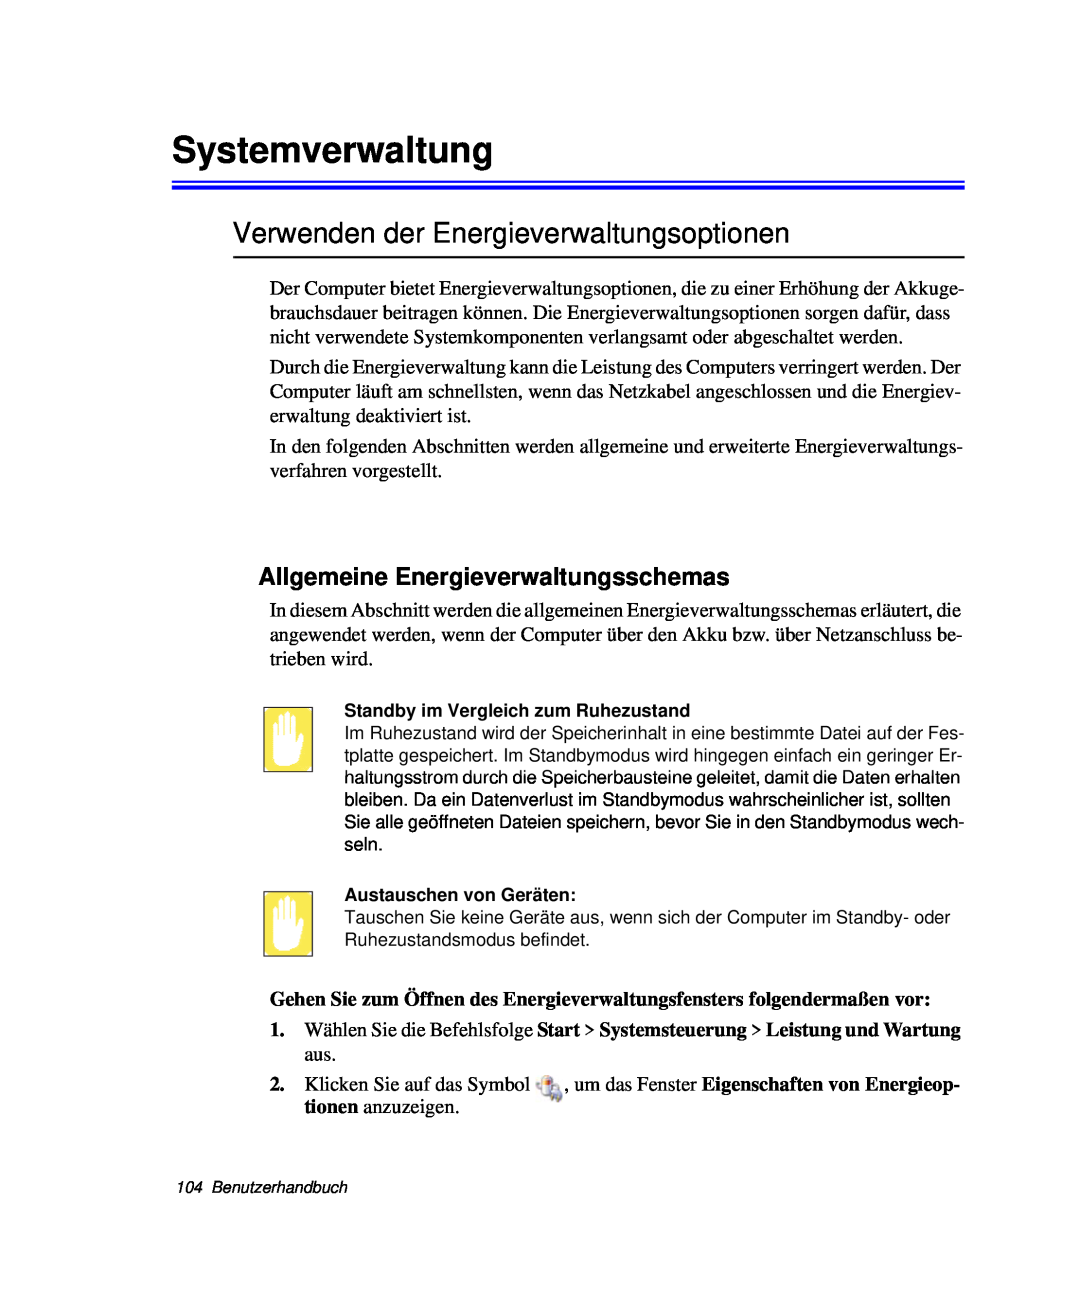 Samsung NP-R40K002/SEG Systemverwaltung, Verwenden der Energieverwaltungsoptionen, Allgemeine Energieverwaltungsschemas 